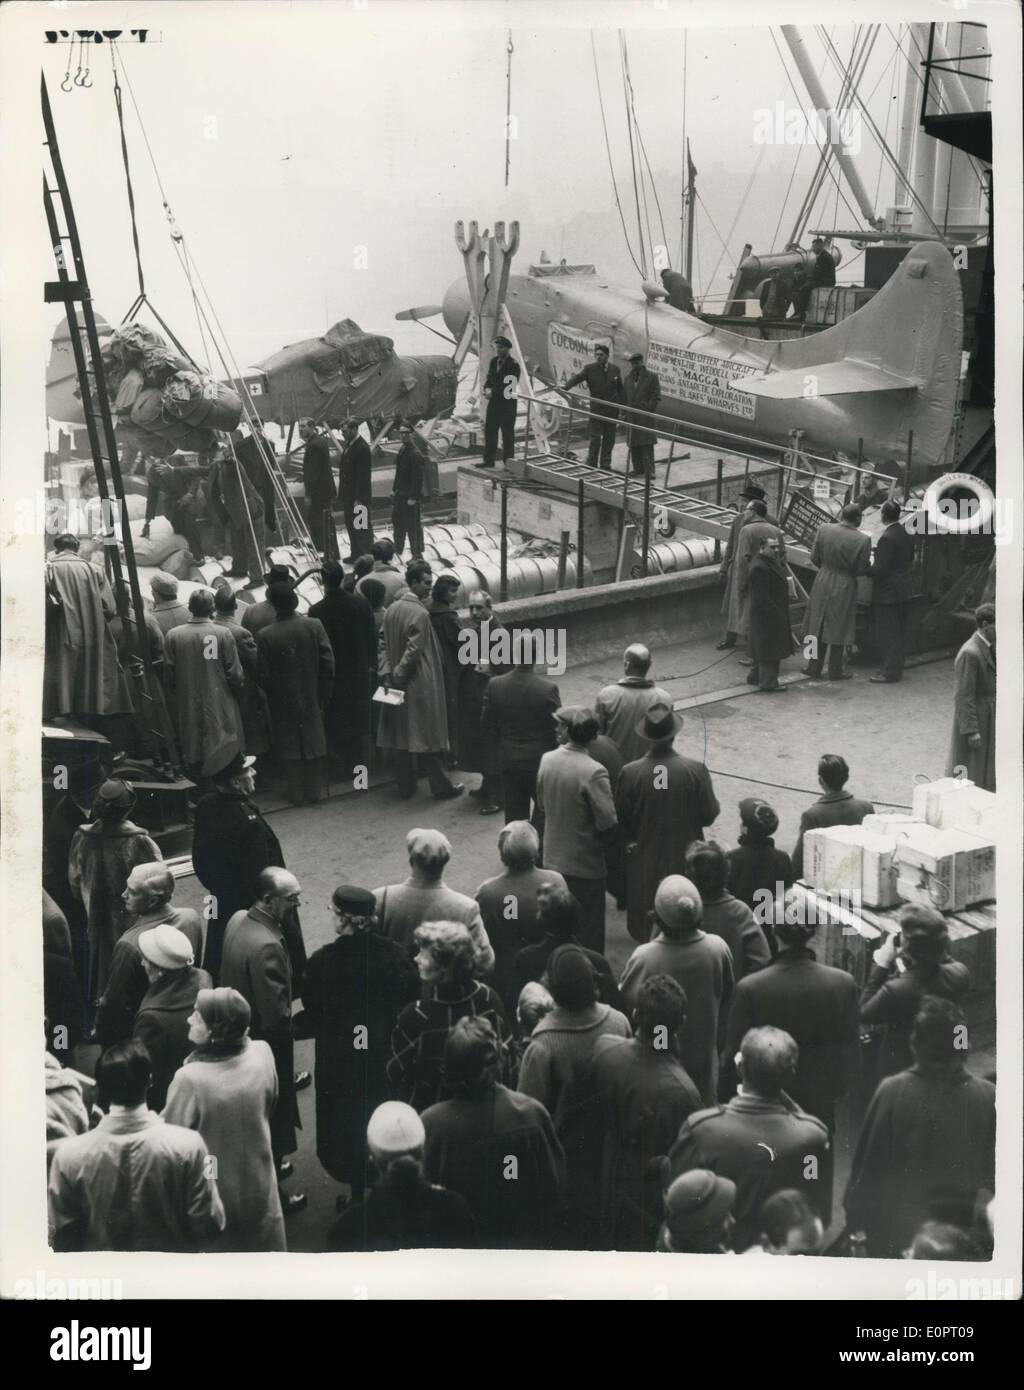 Le 15 novembre 1956 - Le Magga Dan se prépare à quitter Londres pour l'Antarctique : l'Meggs Dan, le navire qui a été affrété par l'Expédition transantarctique basé à Londres pour transporter le Dr V. Fuchs, le chef, et le principal parti d'explorateurs à la glace ''continent'' pour leur voyage au pôle Sud et au-delà, a été prise à bord de fournitures de dernière minute à Butler's Wharf, Tower Bridge, avant qu'elle quitte ce matin. La photo montre la préparation de dernière minute autour du Magga Dan à Butler's Wharf, Tower Bridge avant de partir ce matin. Banque D'Images